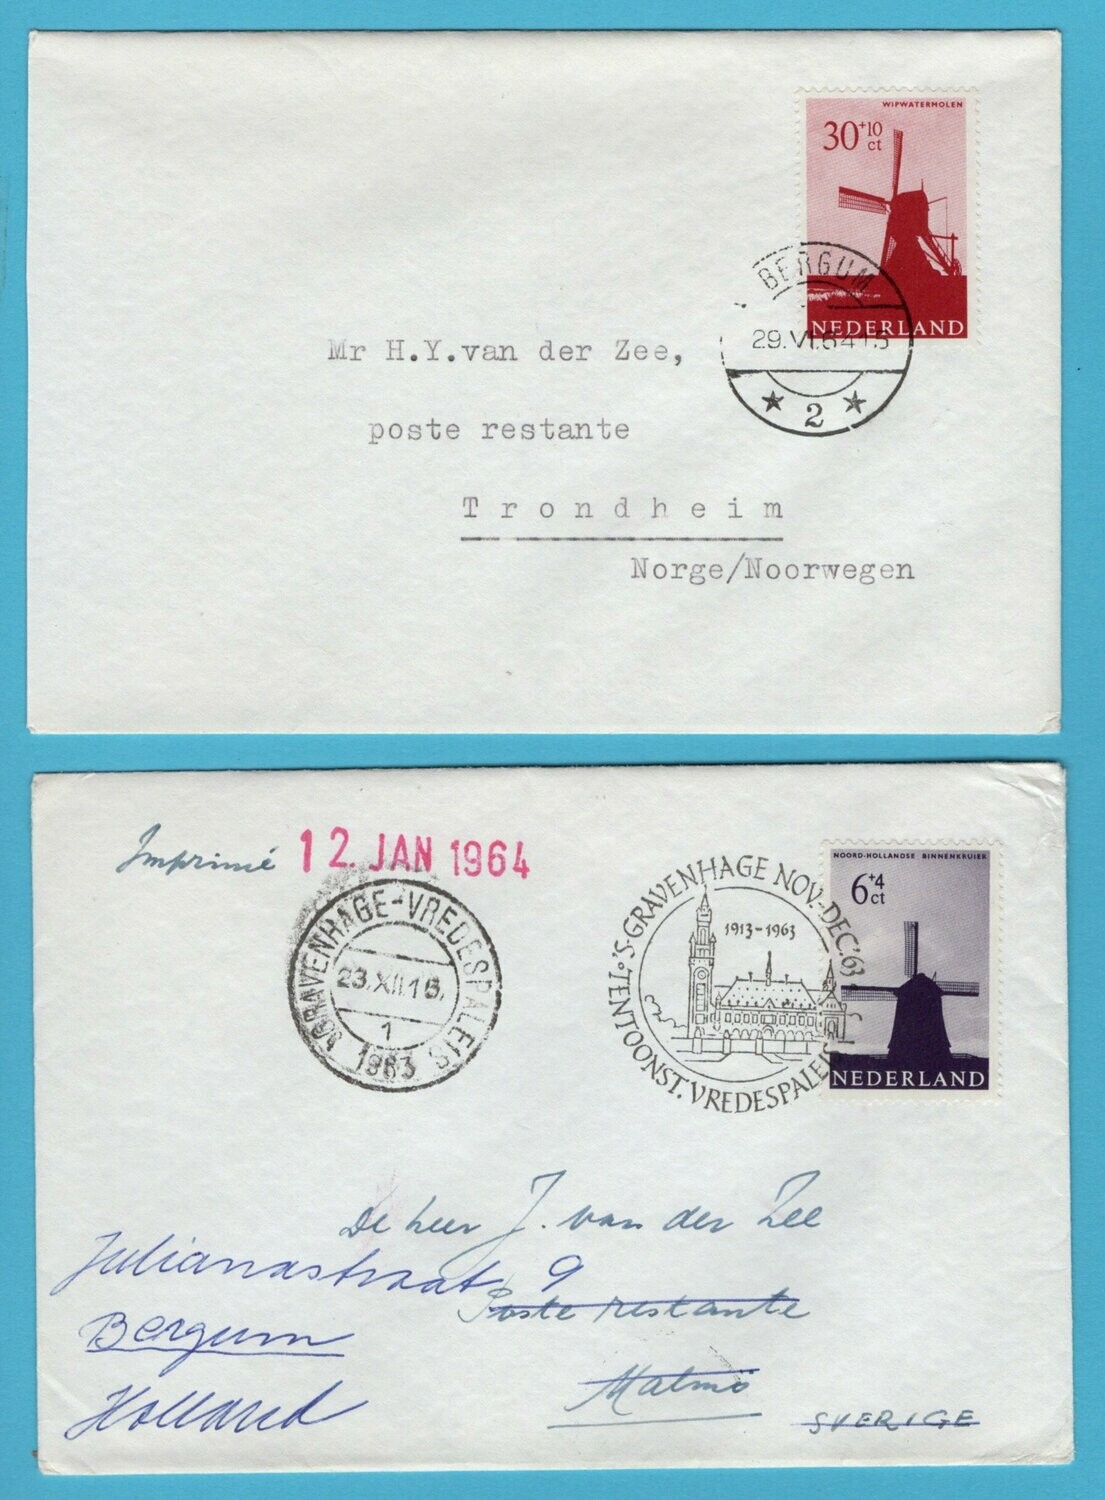 NEDERLAND 2 buitenland brieven 1963-64 met molen frankering